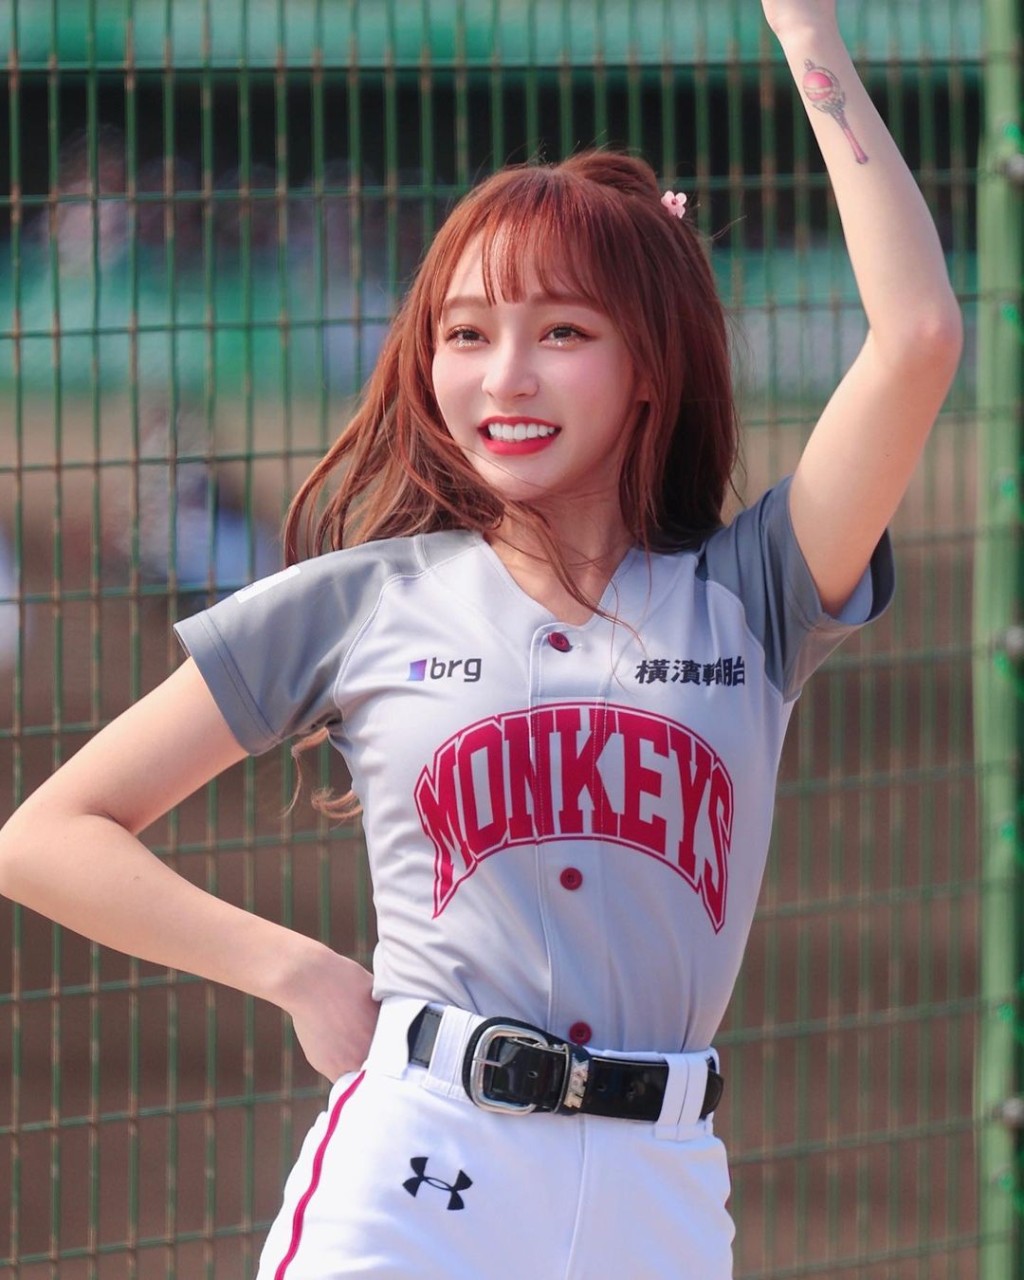 林襄是台灣棒球啦啦隊女神。